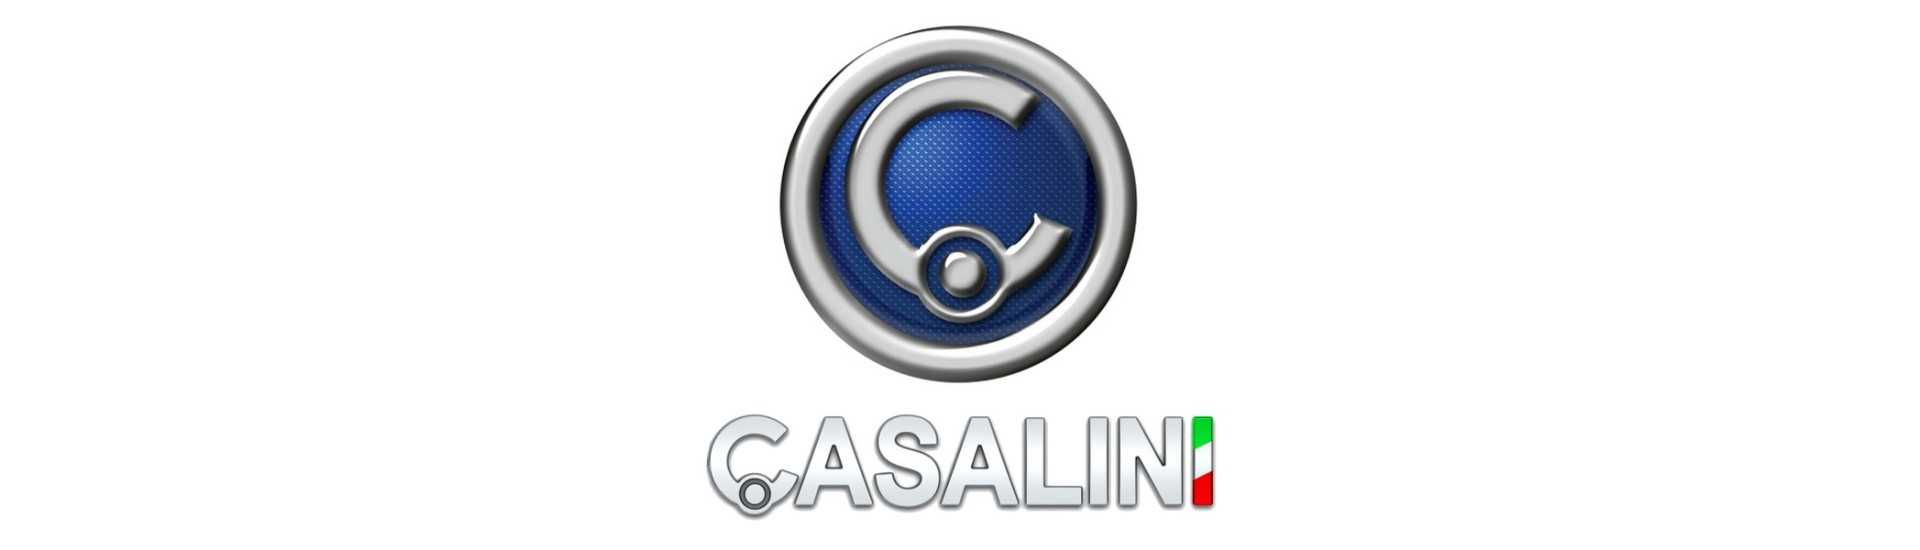 Supporto per montaggio su carrozzeria miglior prezzo per auto senza patente Casalini